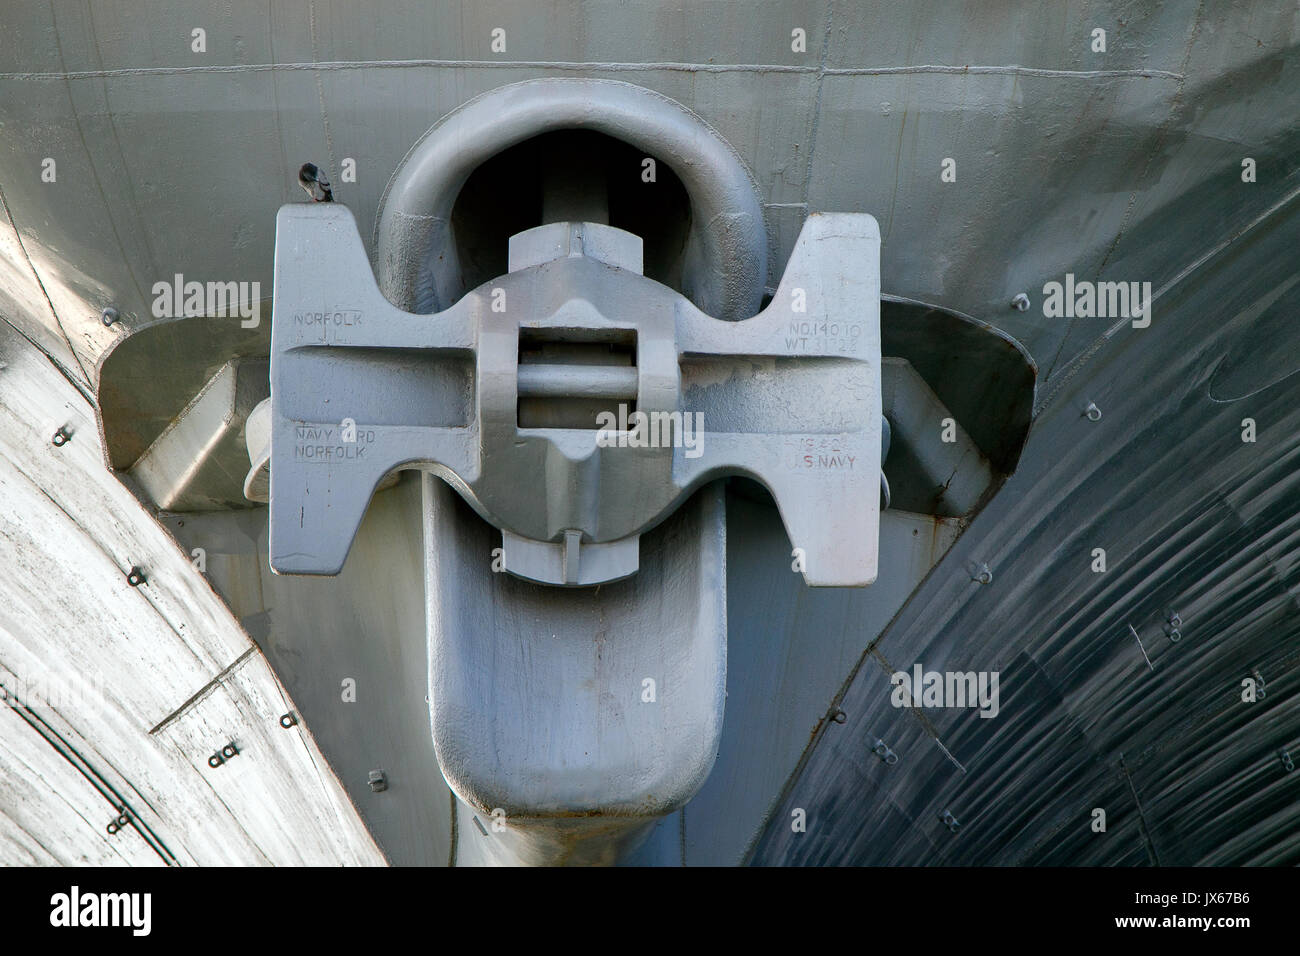 Detailansicht der vorderen Anker des Zweiten Weltkrieges US-Flugzeugträger Intrepid, die an einem der Hudson River piers angedockt ist. Stockfoto